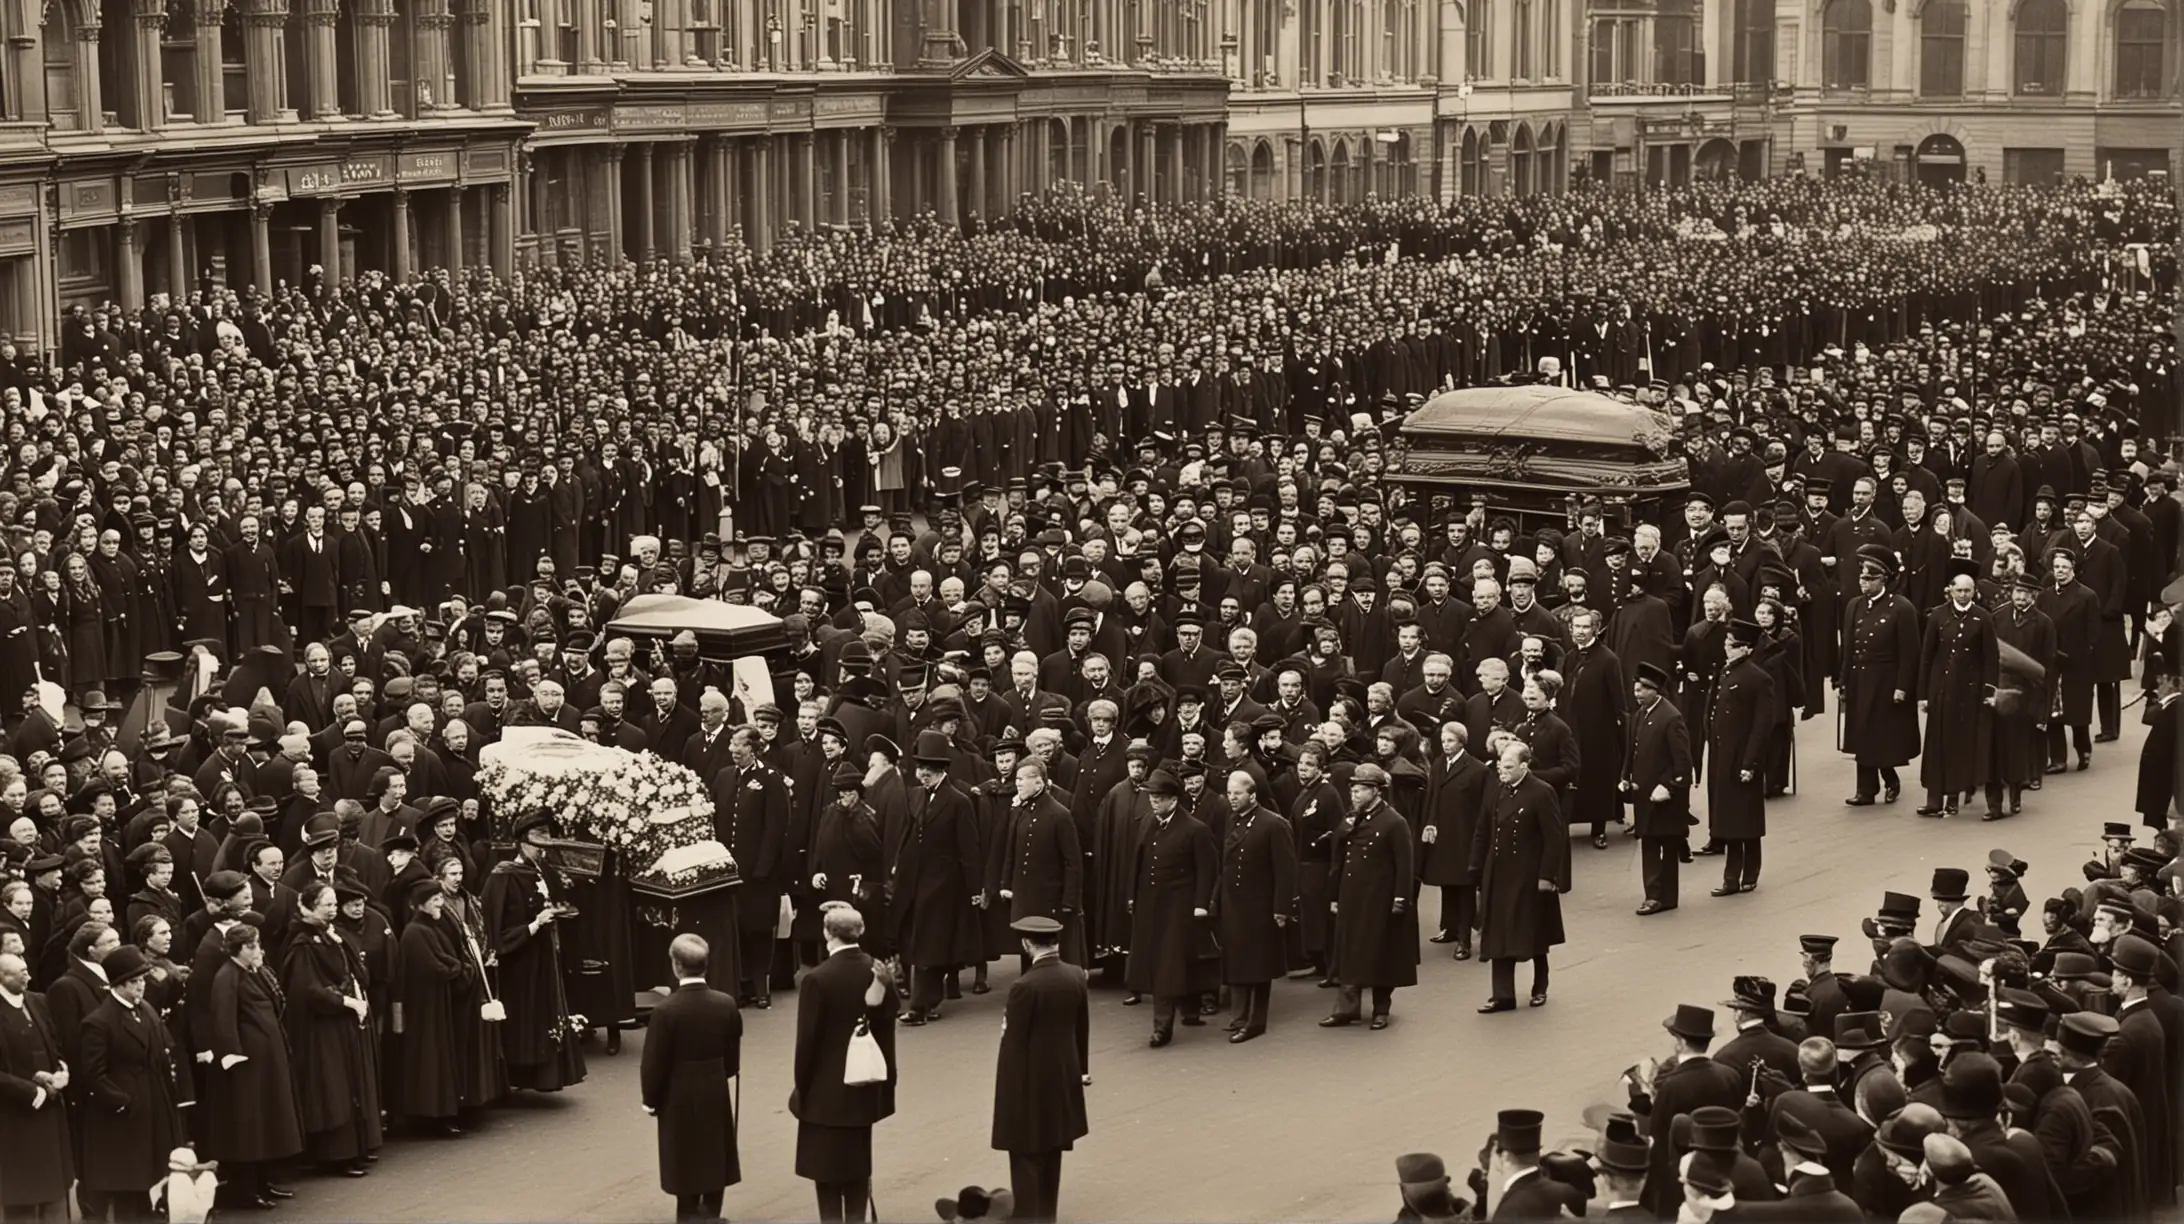 Dame una imagen realista como tomada por cámara profesional; En 1897,  la reina victoria su funeral y su muerte a los 83 años